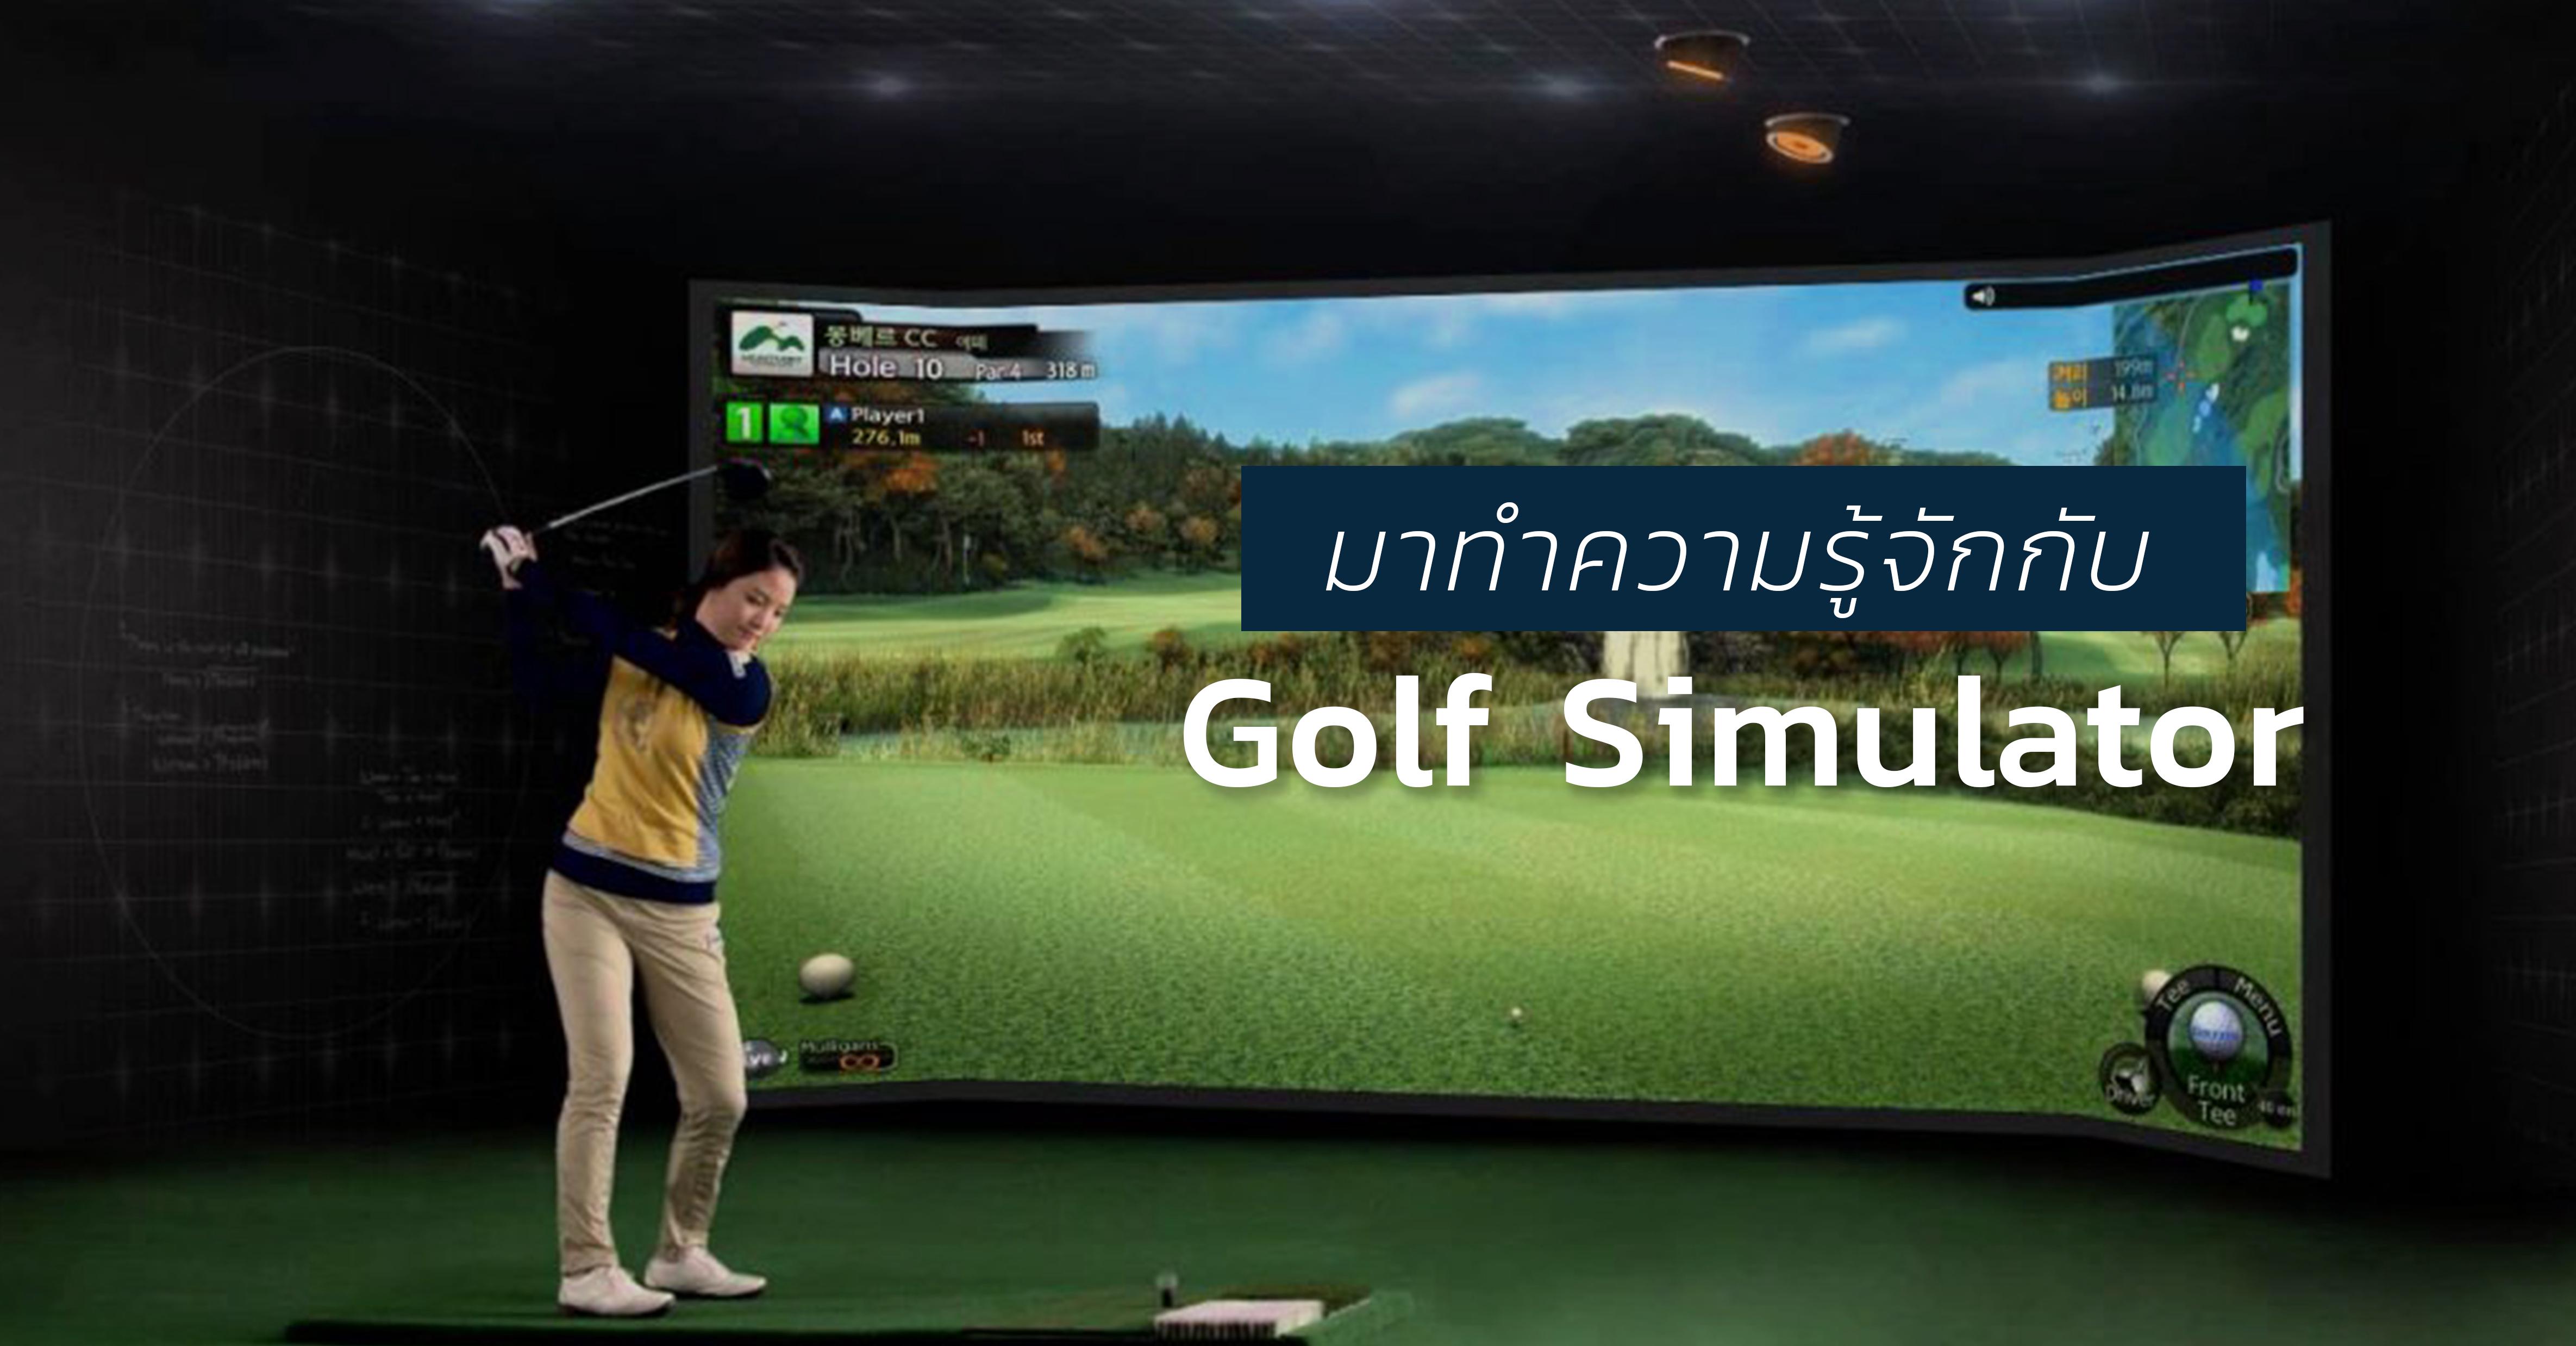 รูปบทความ ชวนดูความล้ำของเกมกีฬา Golf Simulator เล่นกันได้เหมือนอยูในสนามจริง